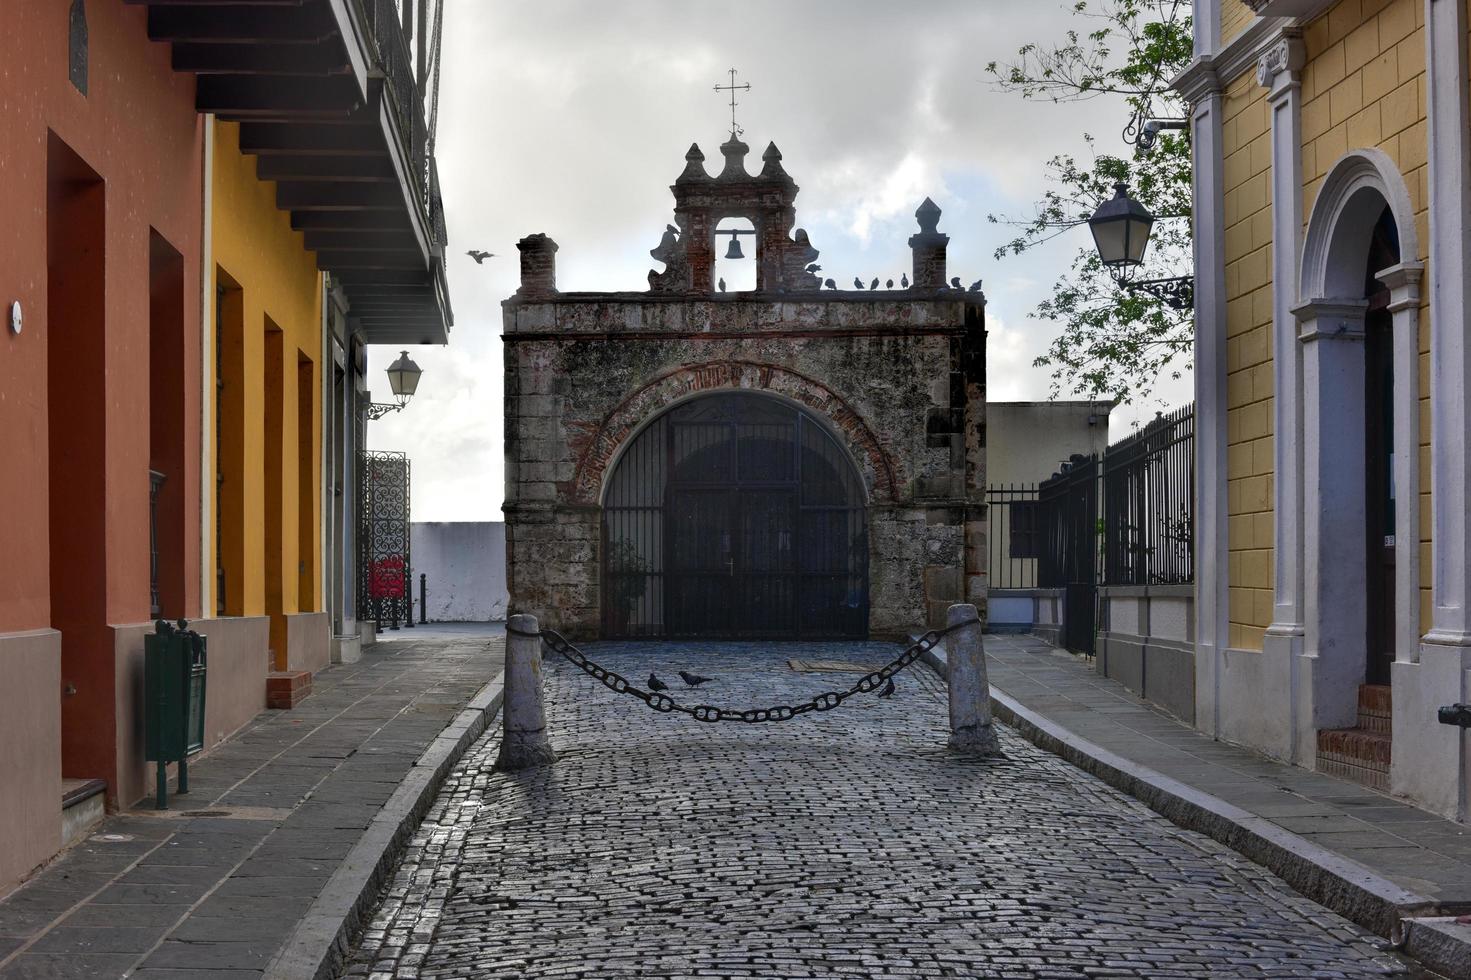 san juan, porto rico - 24 décembre 2015 - chapelle de rue historique, chapelle du christ sauveur dans le vieux san juan, porto rico. photo